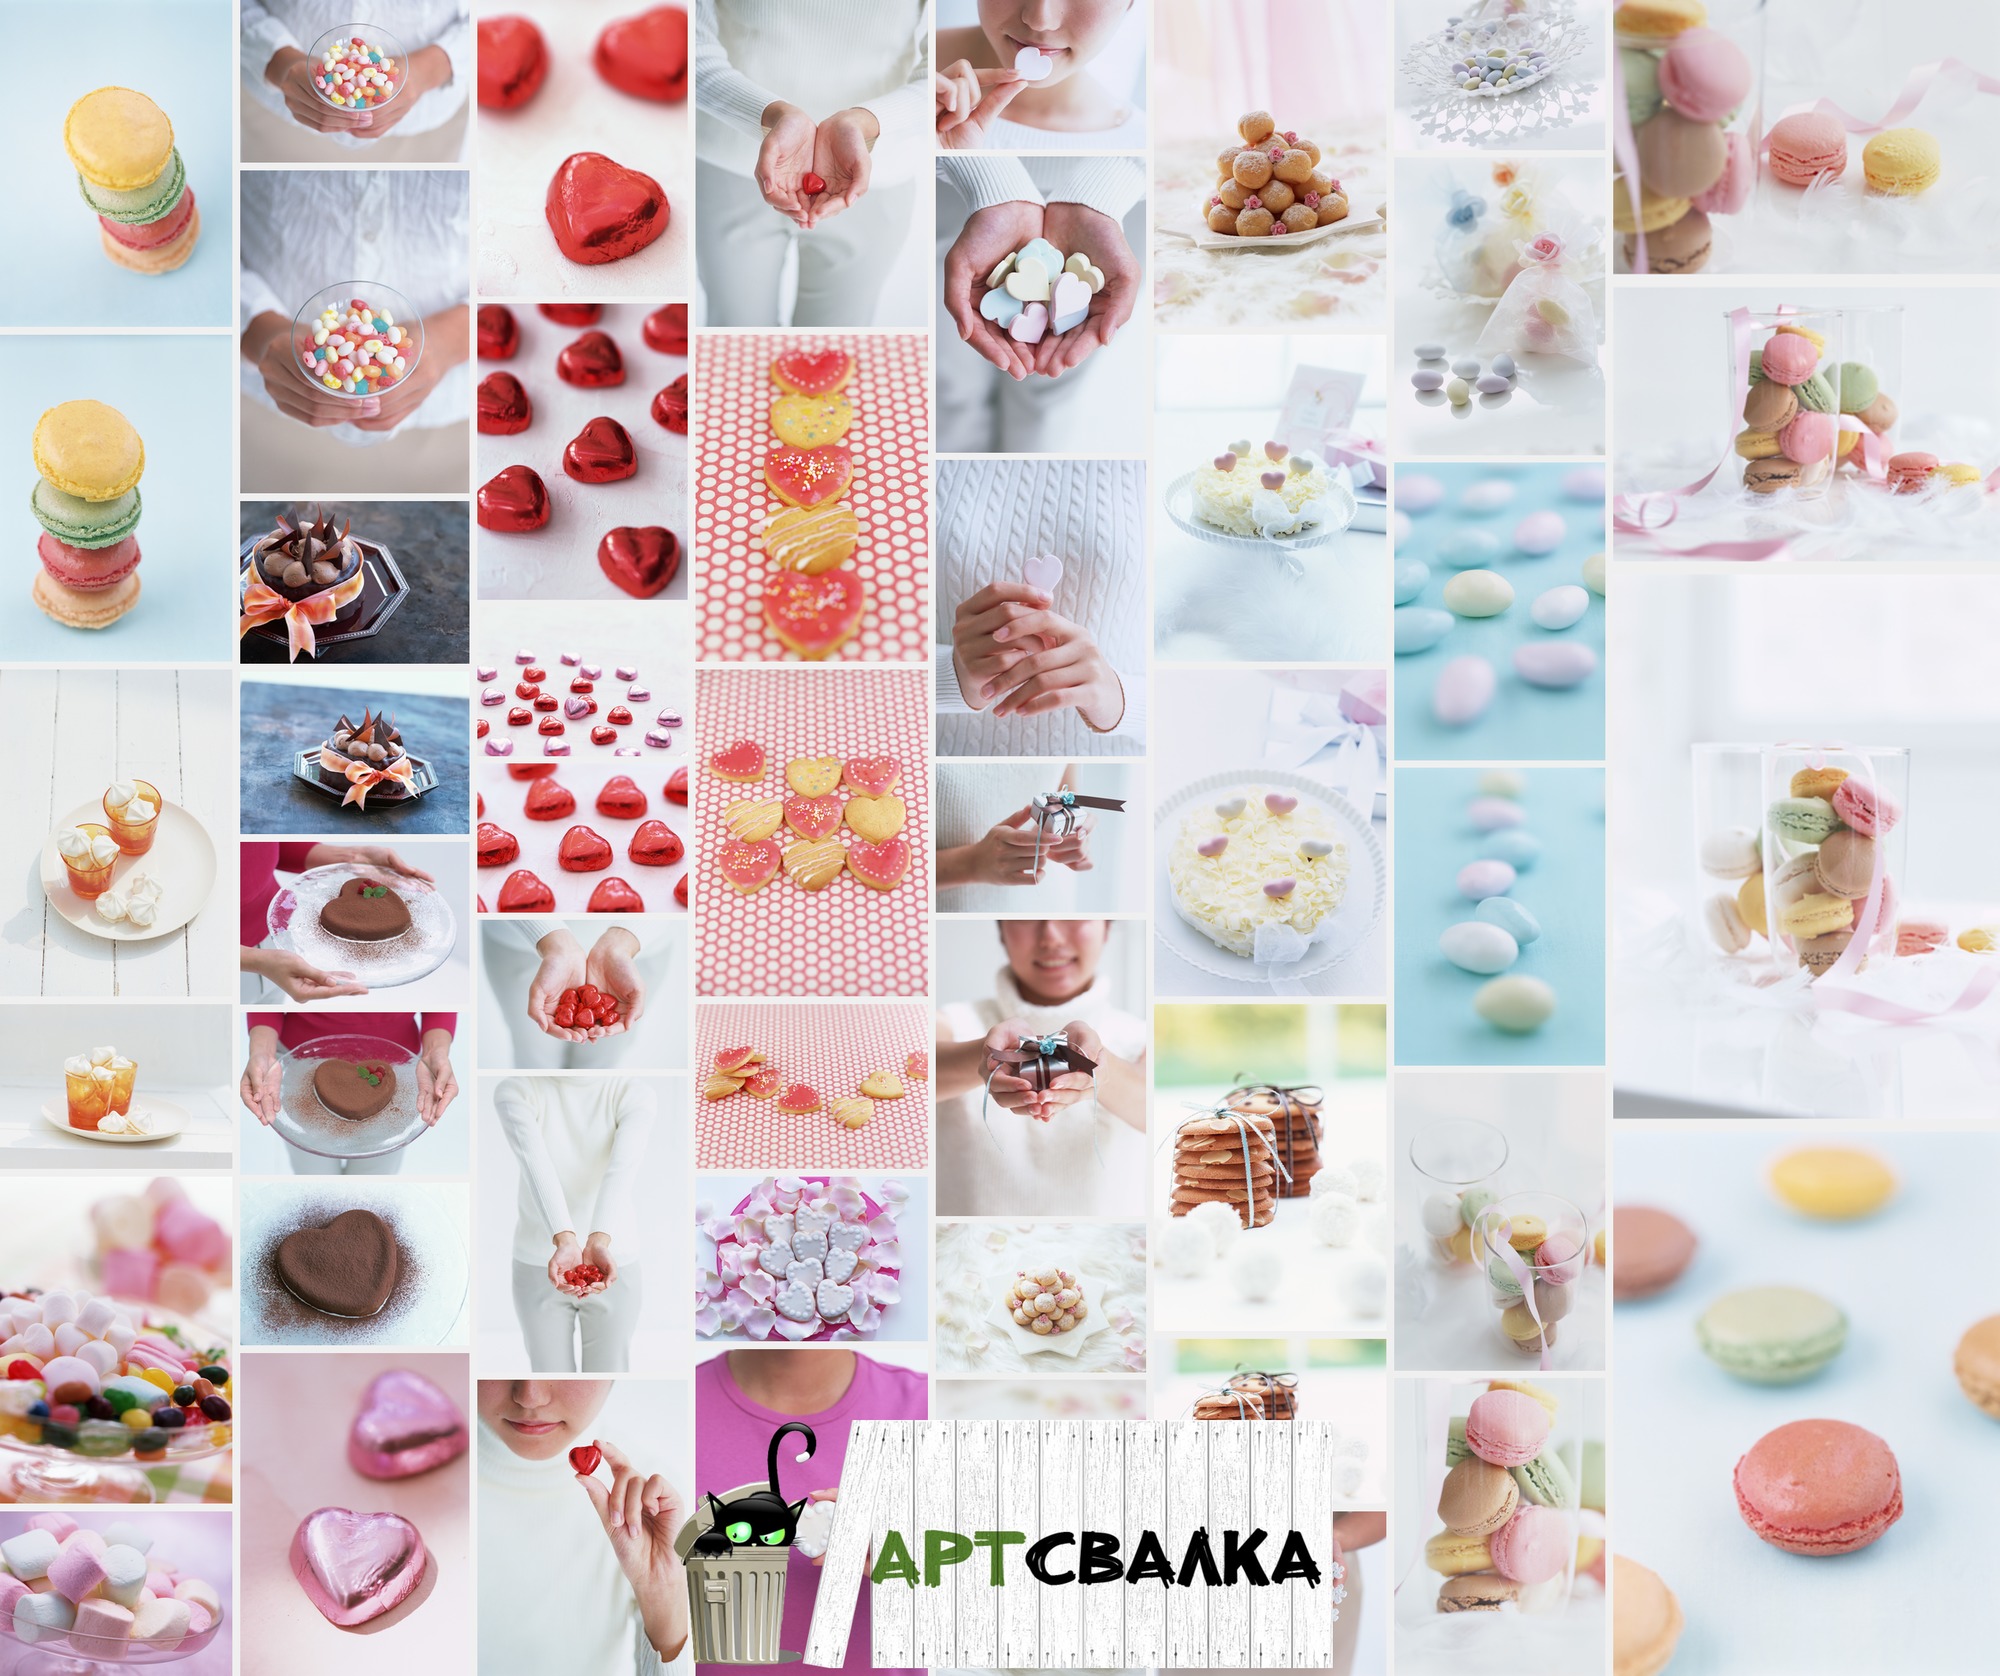 Тортики и различные сладости из фруктов и ягод. Часть 3 | Cakes and various sweets from fruits and berries. Part 3